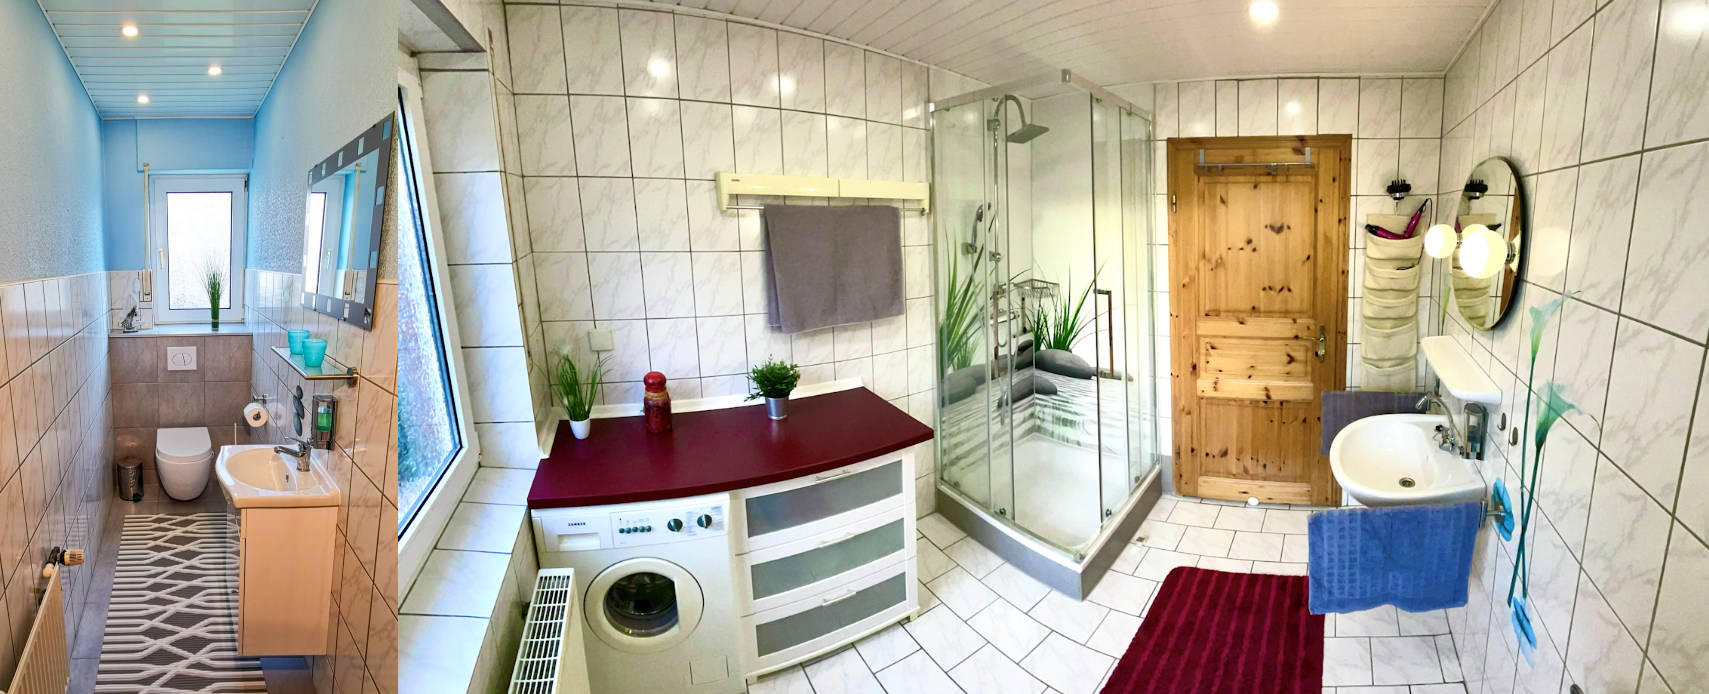 Wohnzimmer mit Kochecke und Badezimmer